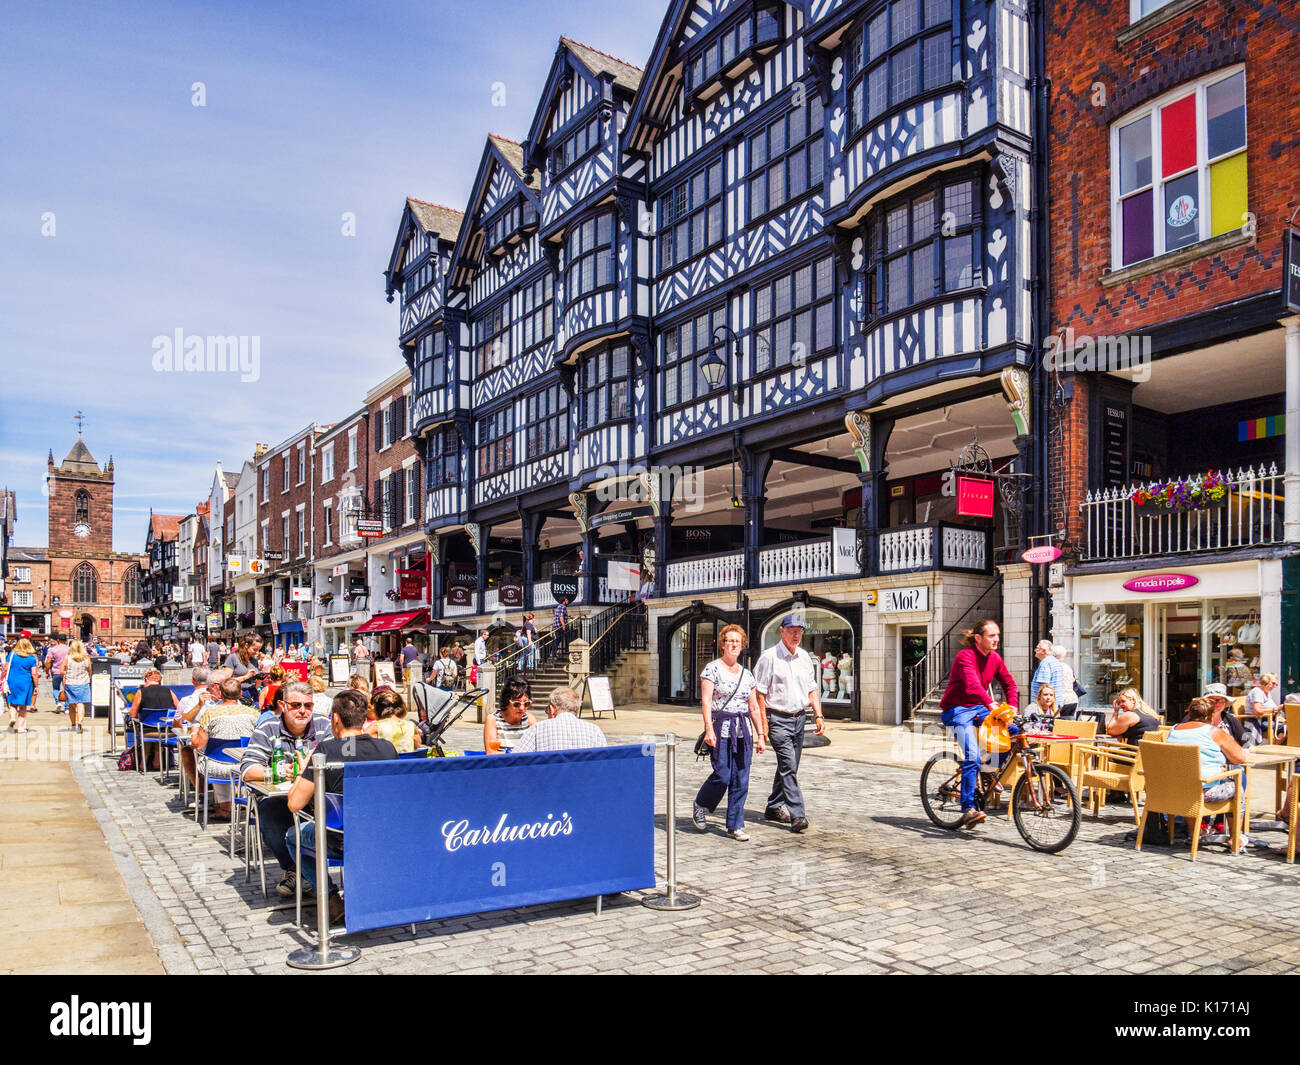 18 Juillet 2017 : Chester, Cheshire, Angleterre, Royaume-Uni - maisons à colombages dans la rue Bridge, et Carluccio's restaurant, avec des gens assis à l'extérieur de la s Banque D'Images